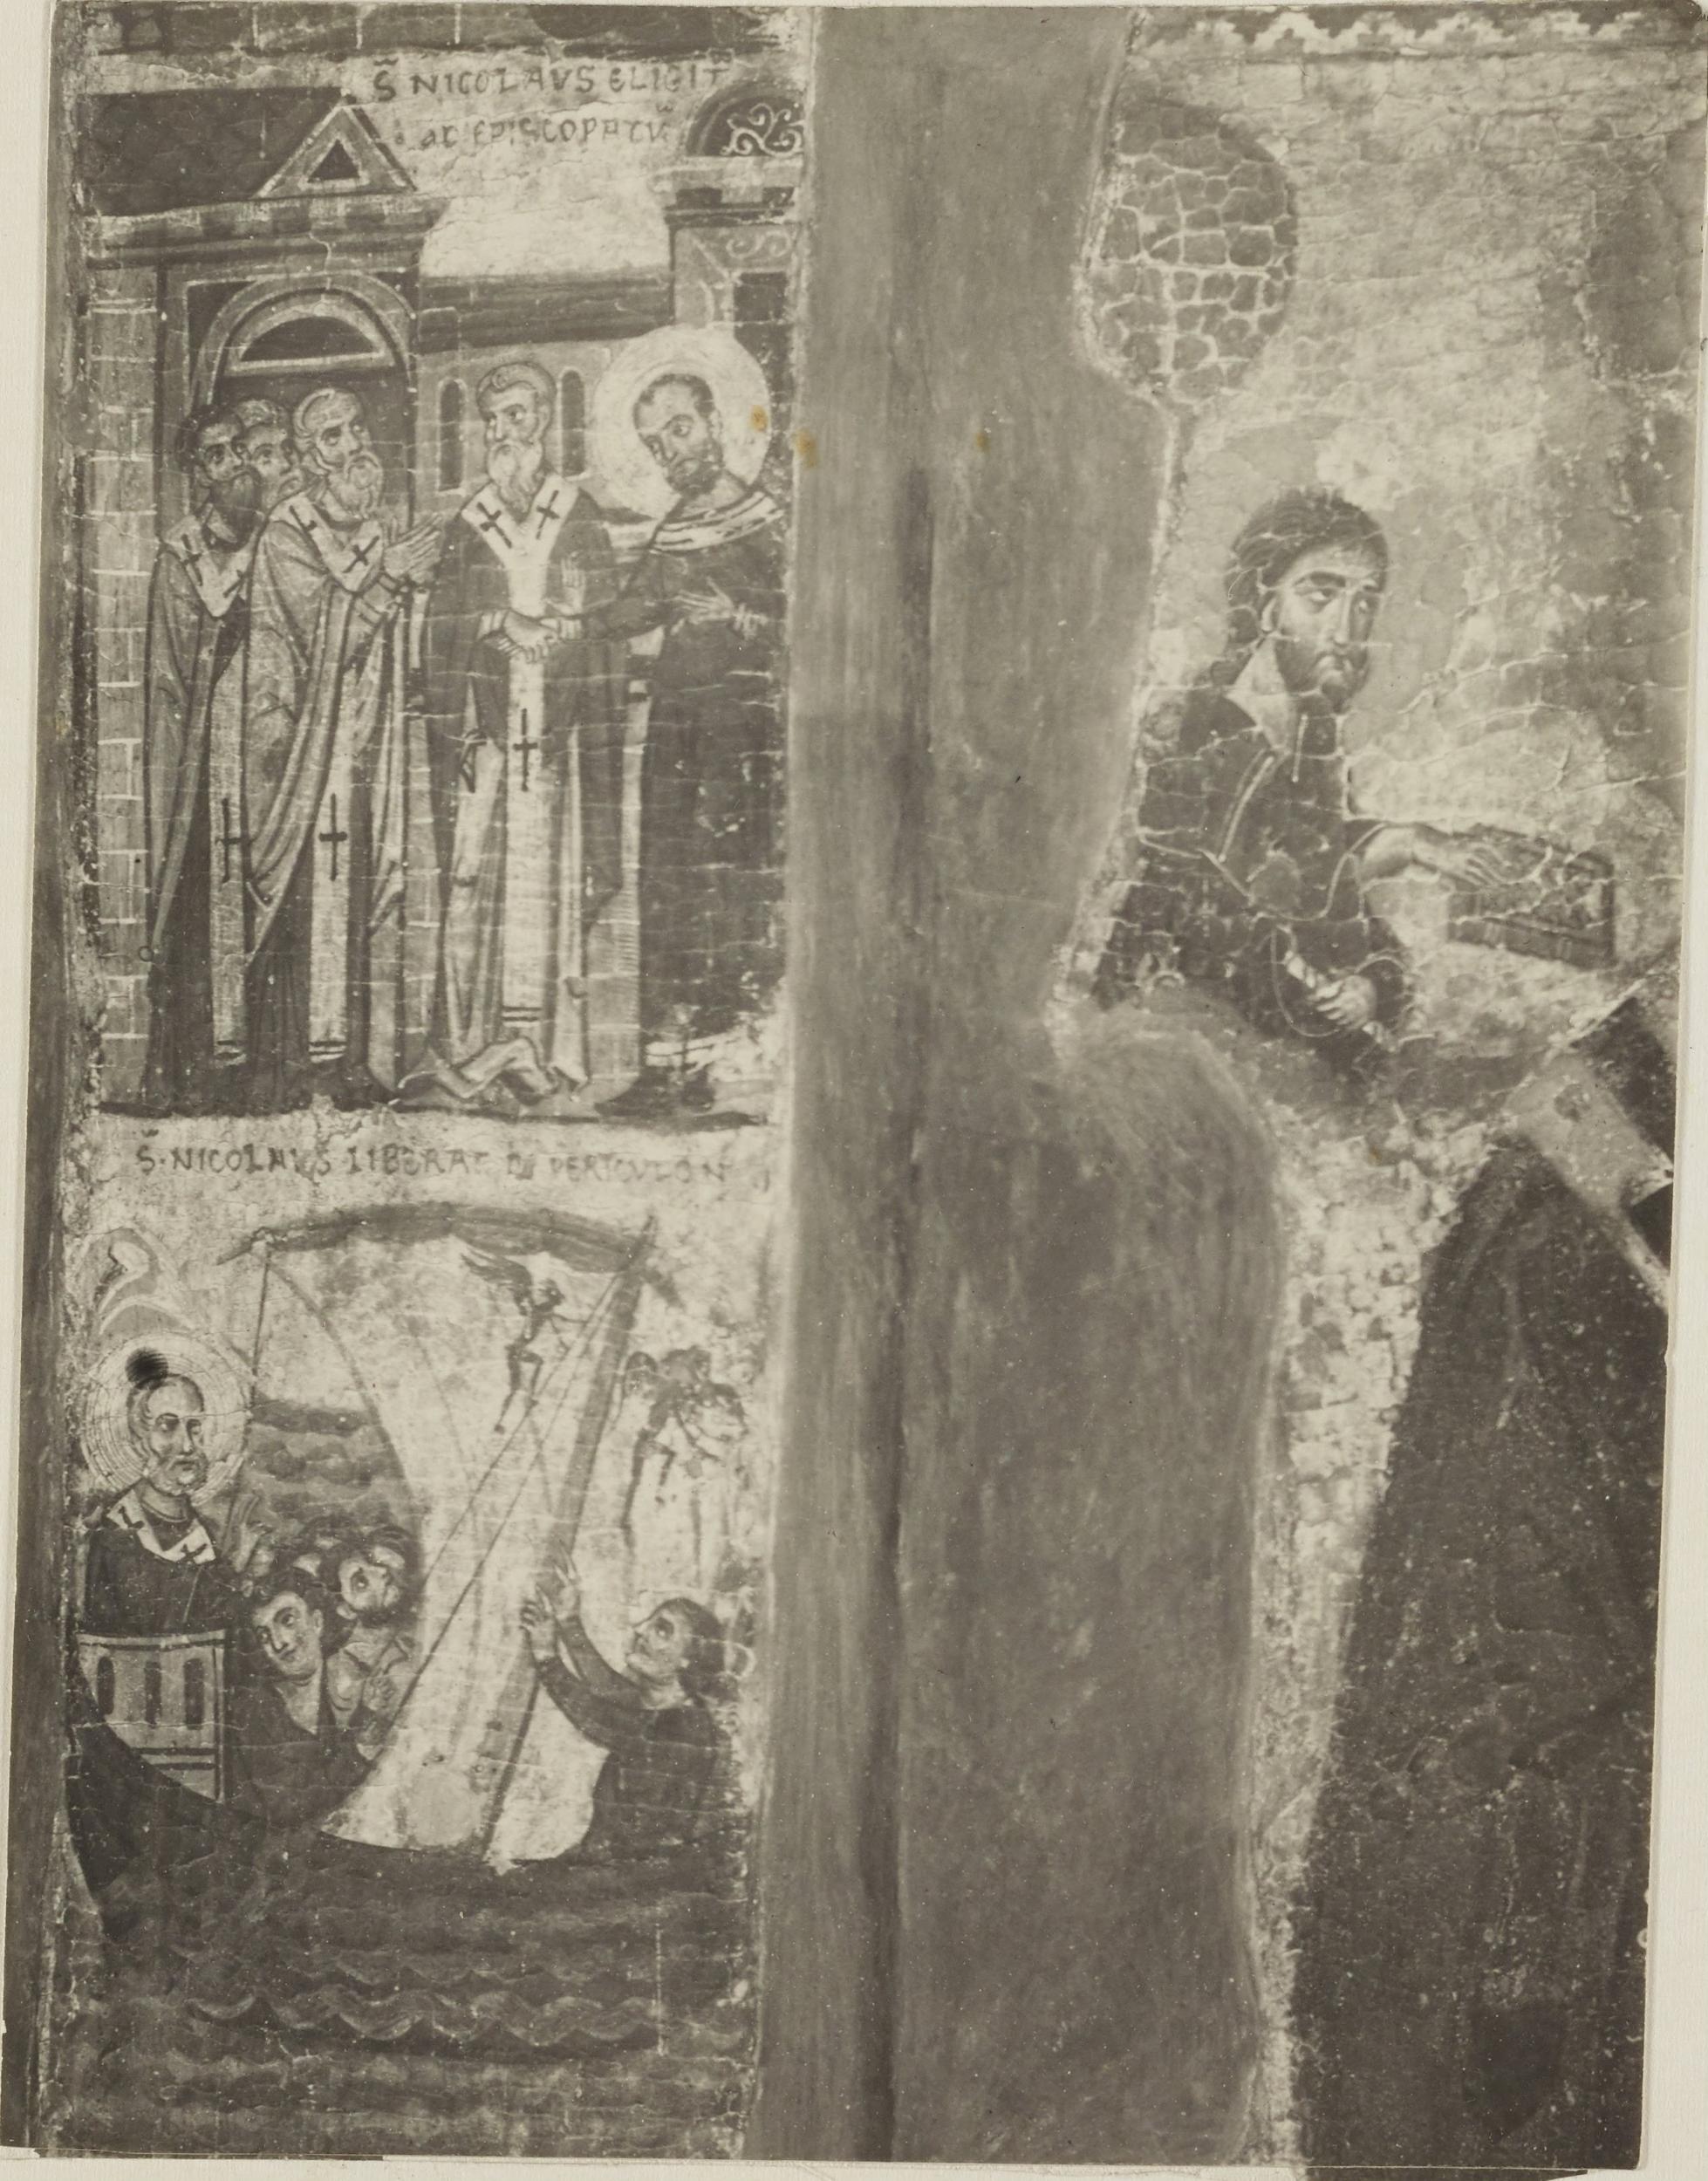 De Gregorio, Bisceglie - Chiesa di S. margherita, dittico dei SS.Nicola e Margherita - particolare, 1901-1910, gelatina ai sali d'argento/carta, MPI137790